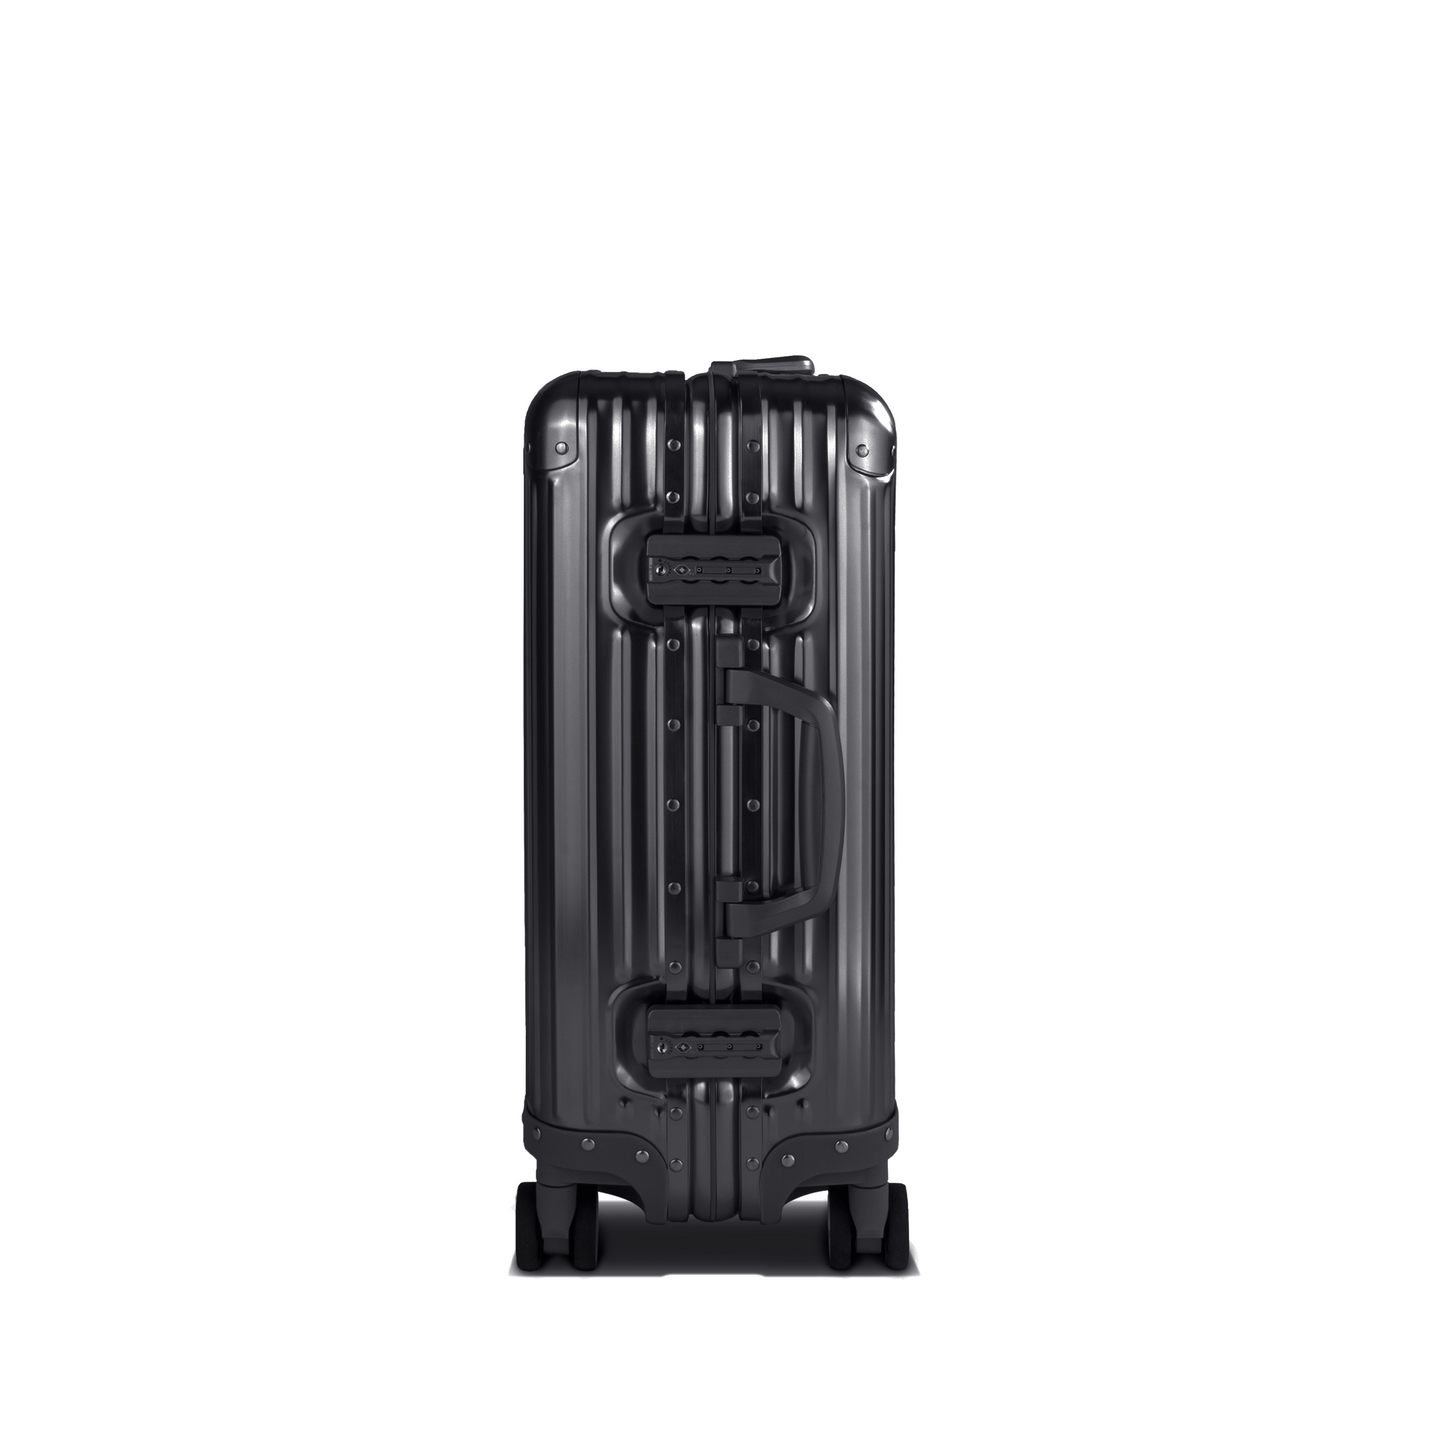 Flightmode Luggage & Bags Flightmode Travel Suitcase Cabin-Black